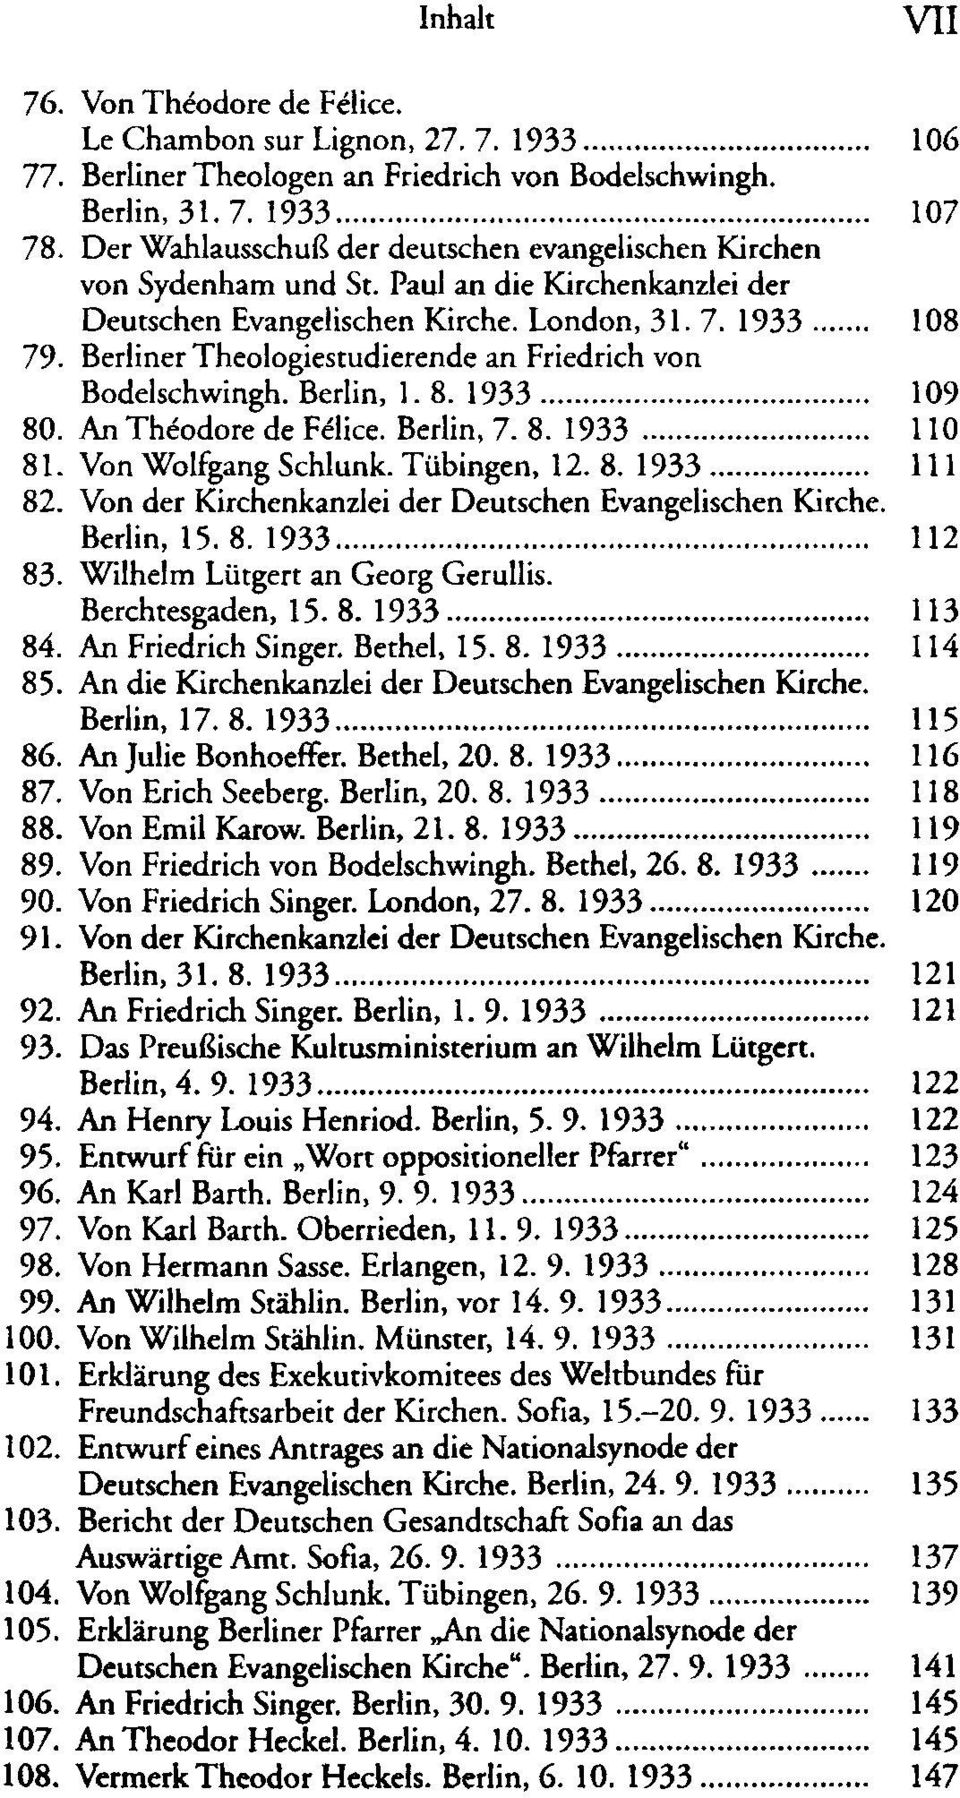 Berliner Theologiestudierende an Friedrich von Bodelschwingh. Berlin, 1. 8. 1933 109 80. An Théodore de Felice. Berlin, 7. 8. 1933 110 81. Von Wolfgang Schlunk. Tübingen, 12. 8. 1933 111 82.